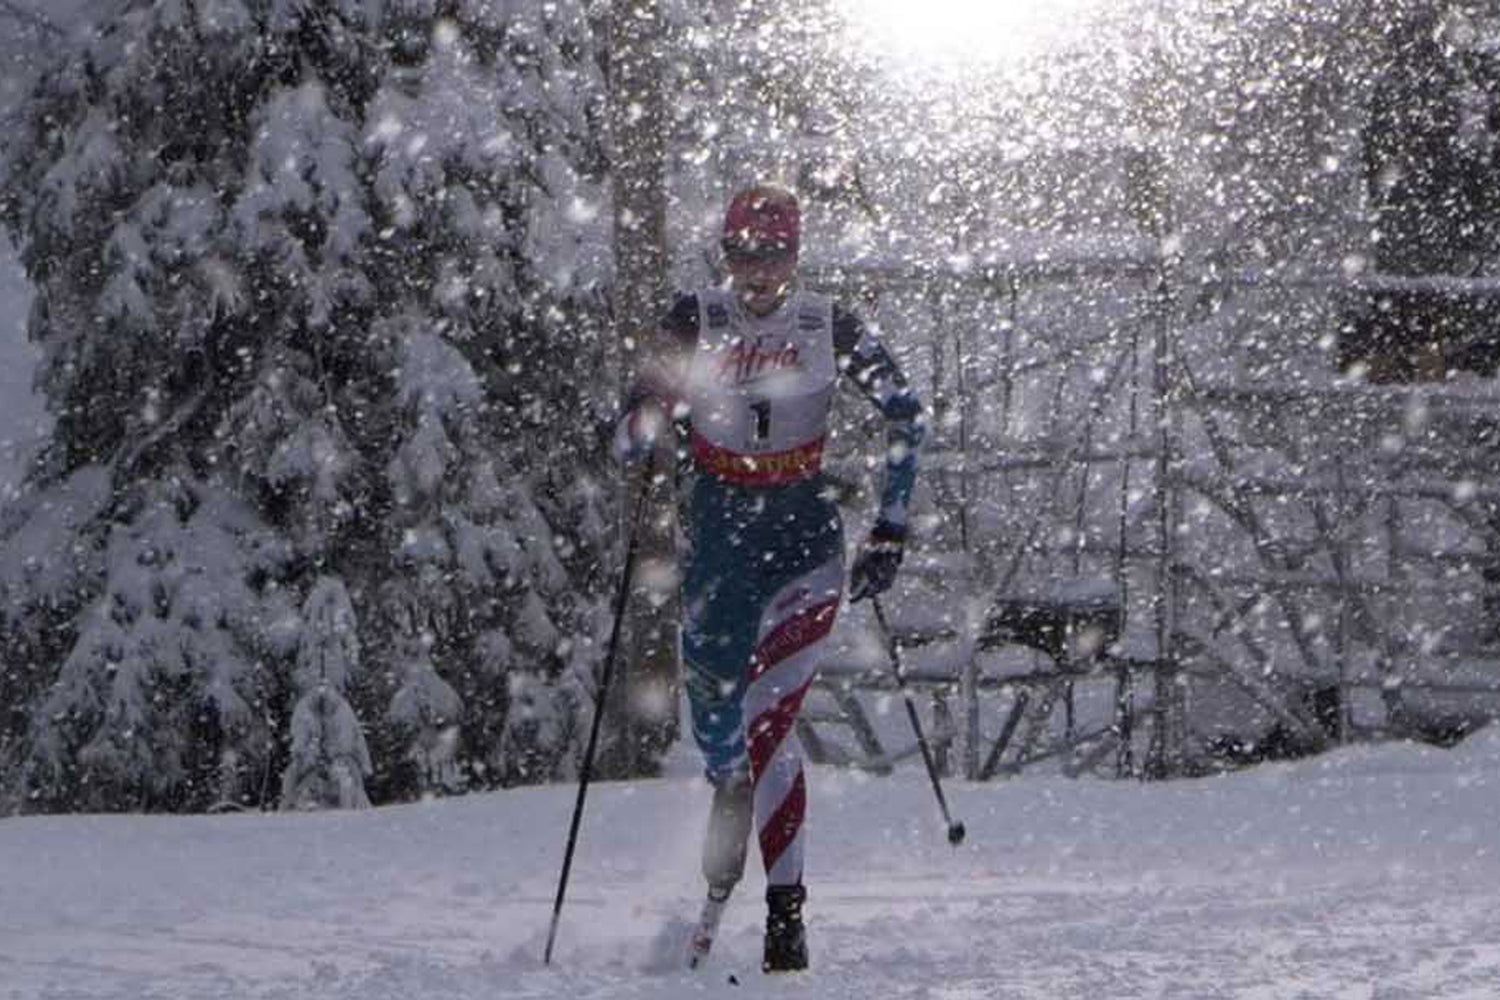 Review: Julia Kern's Eyewear Picks For Nordic Skiing